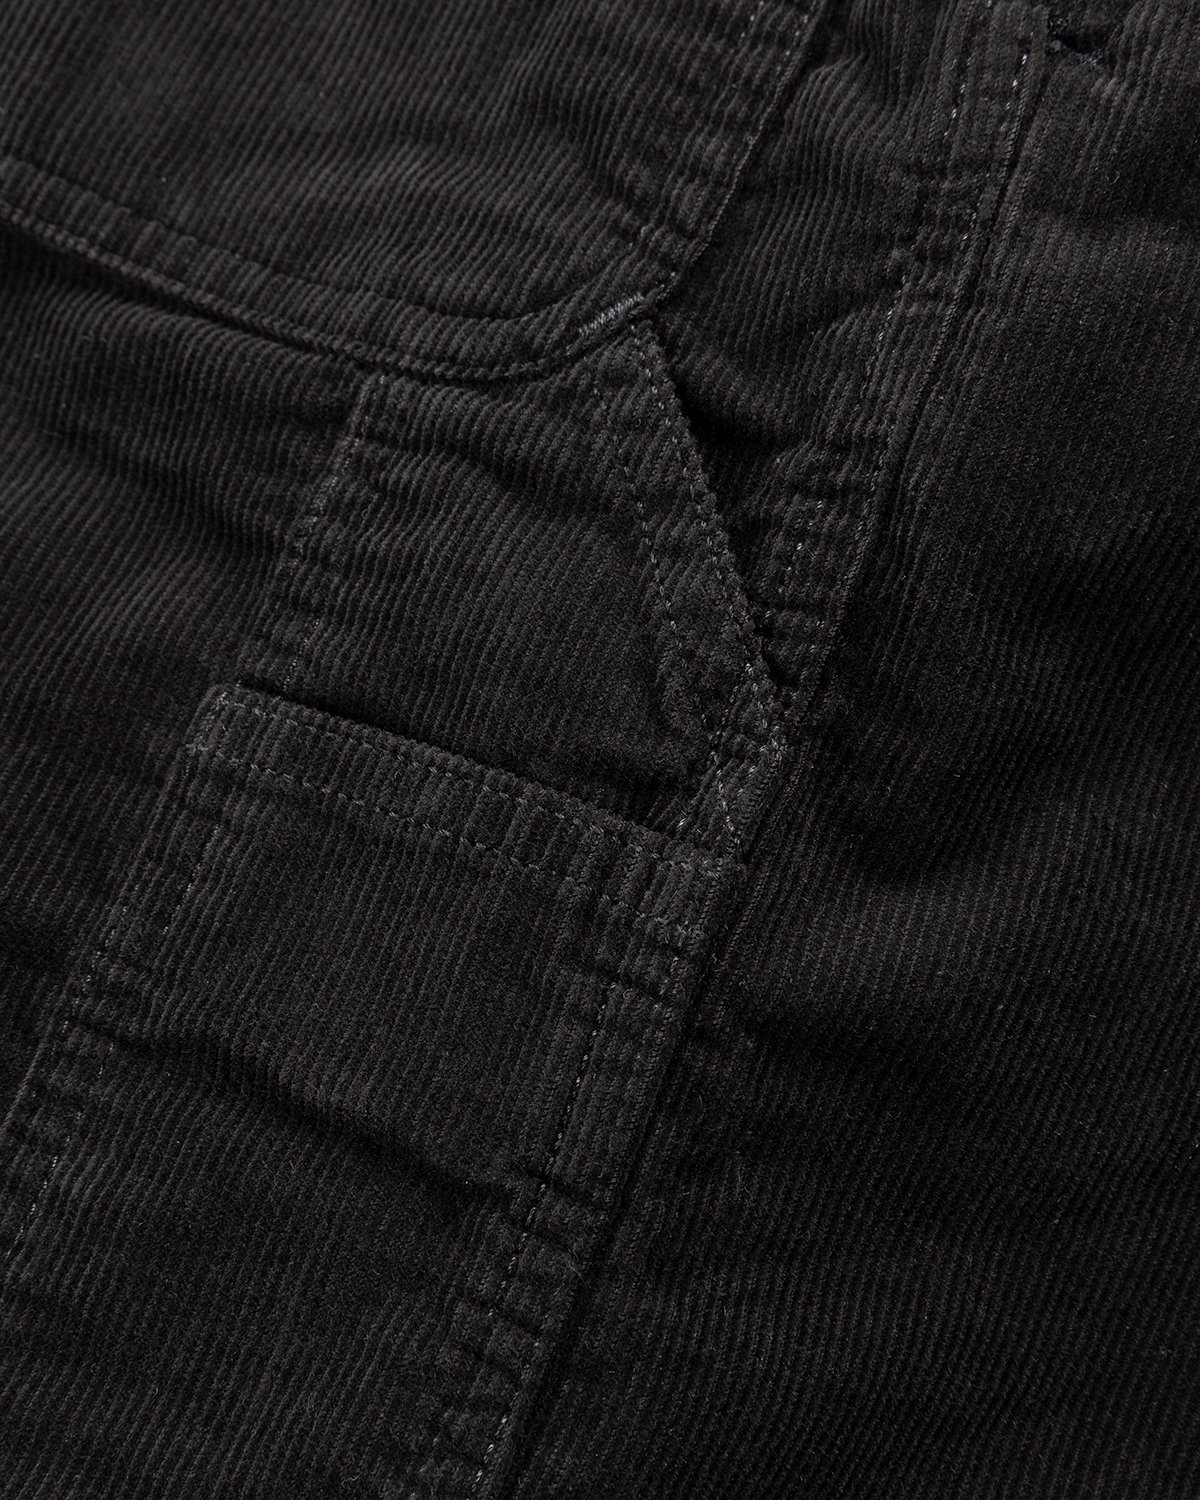 Carhartt WIP - Flint Pant Black Rinsed - Clothing - Black - Image 7